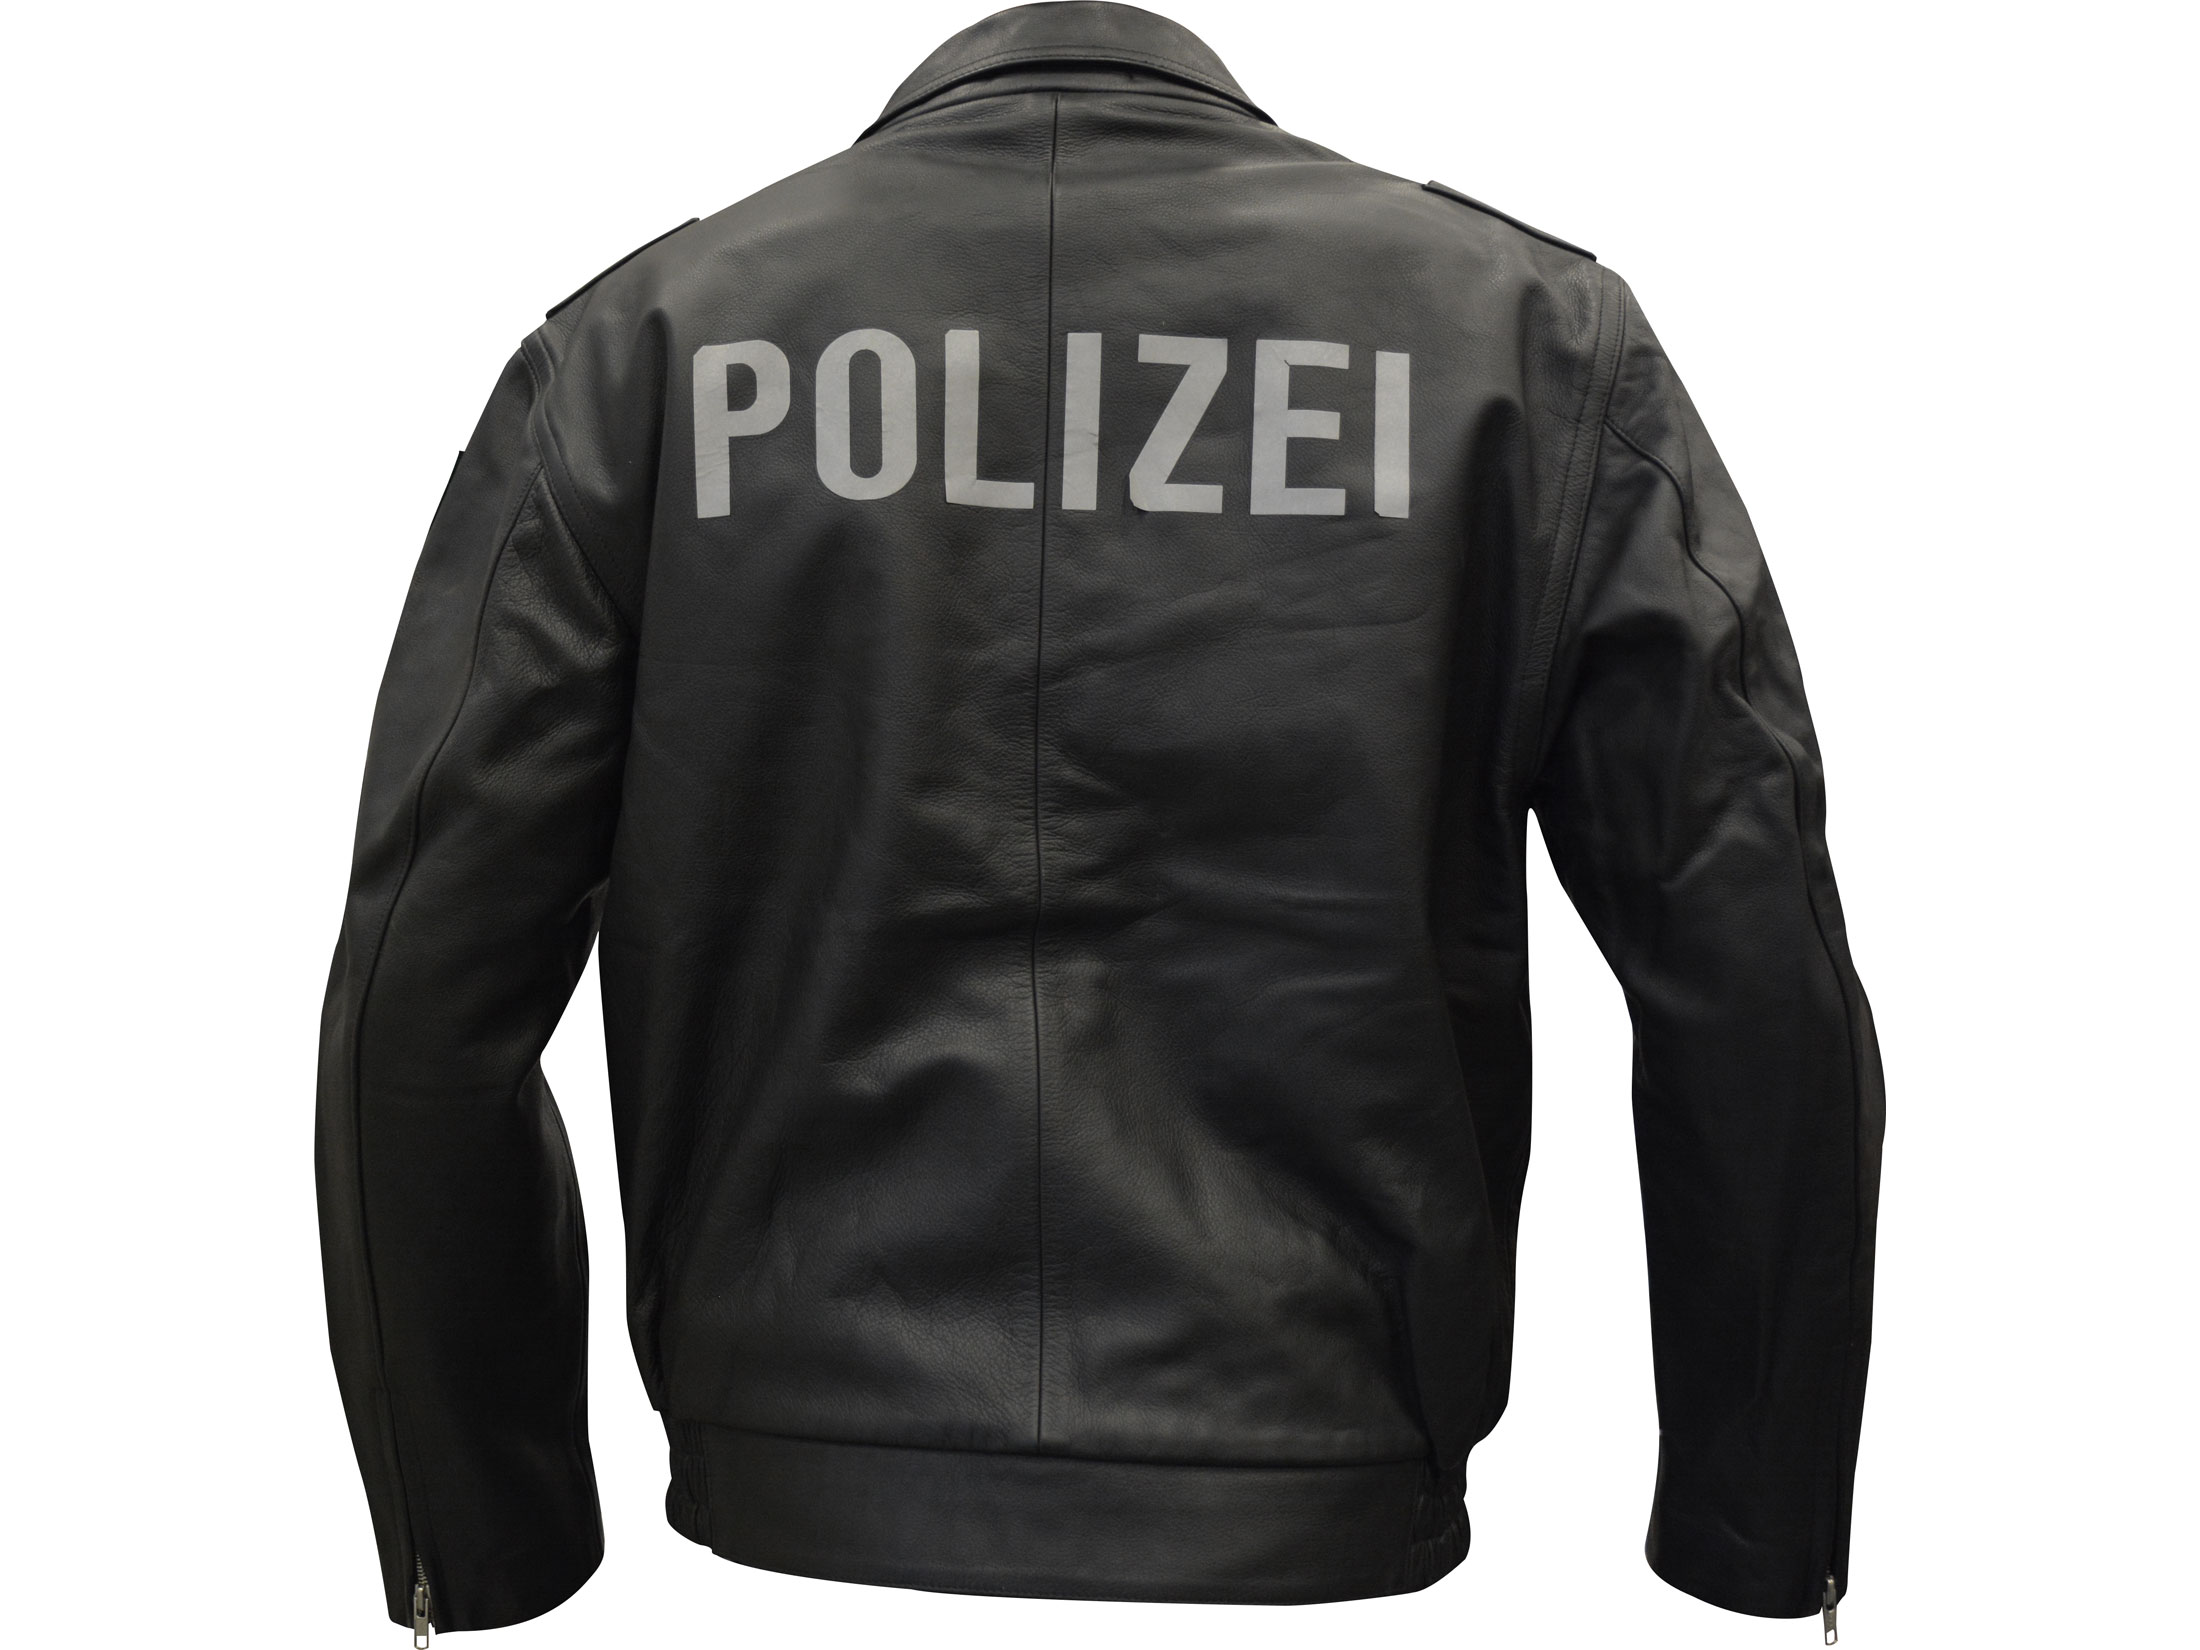 Used German Military Surplus Leather Police Jacket - Cairoamani.com